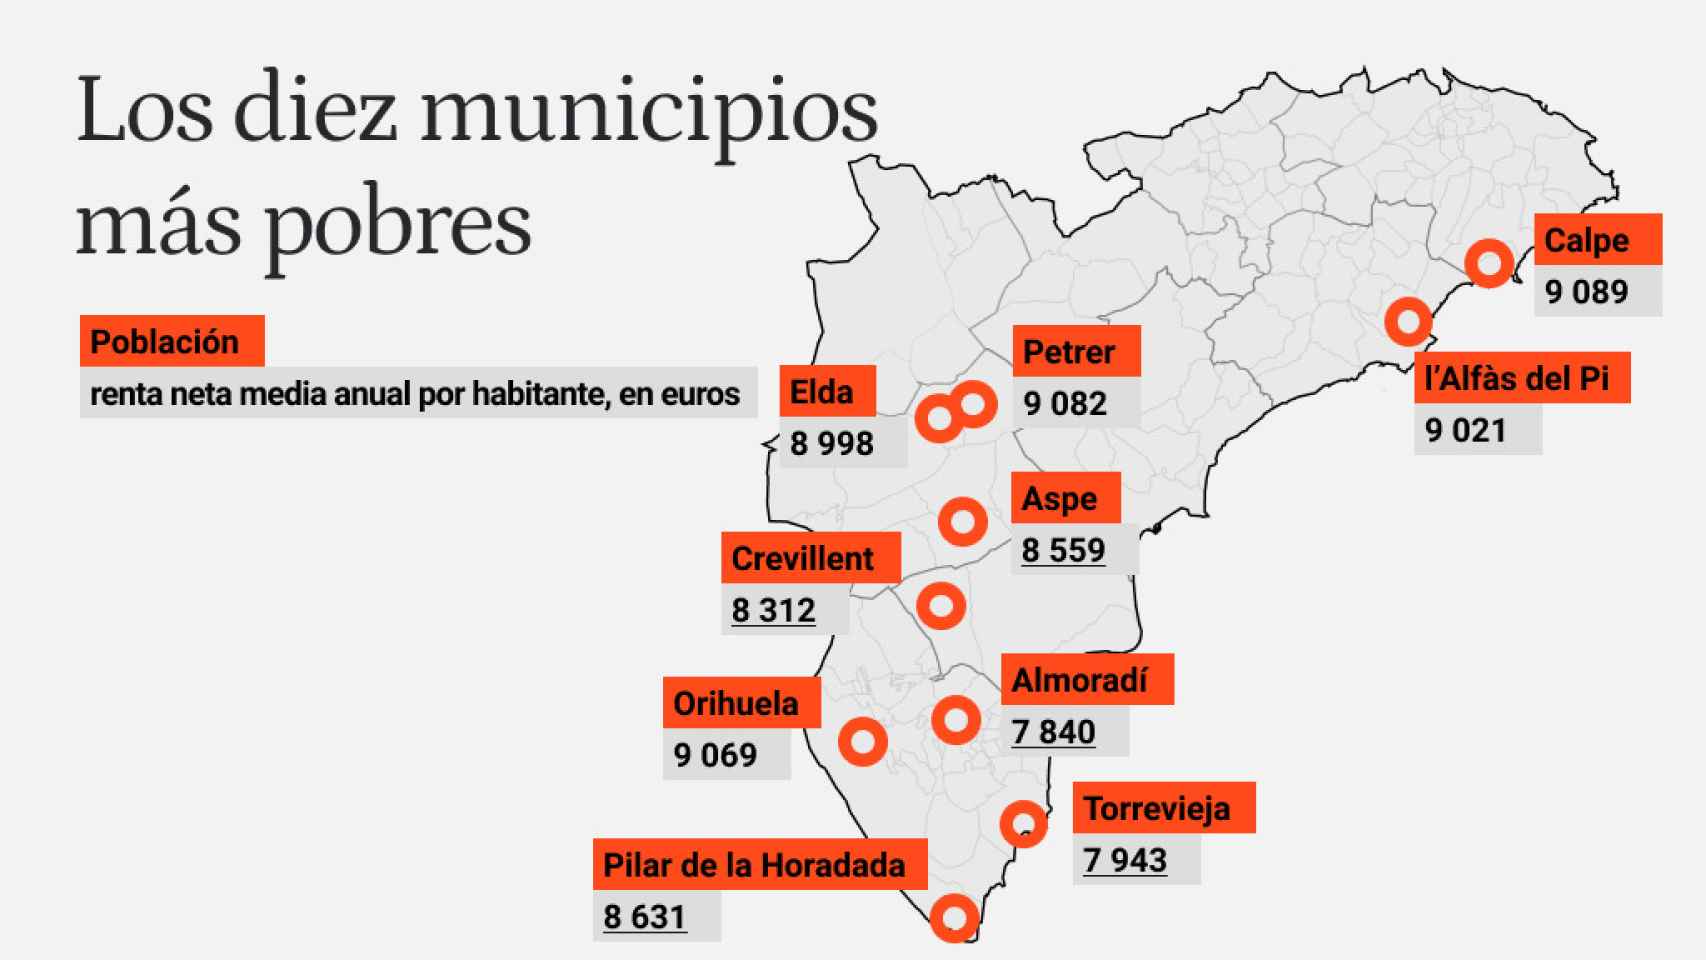 Los diez municipios más pobres de la Comunidad Valenciana.